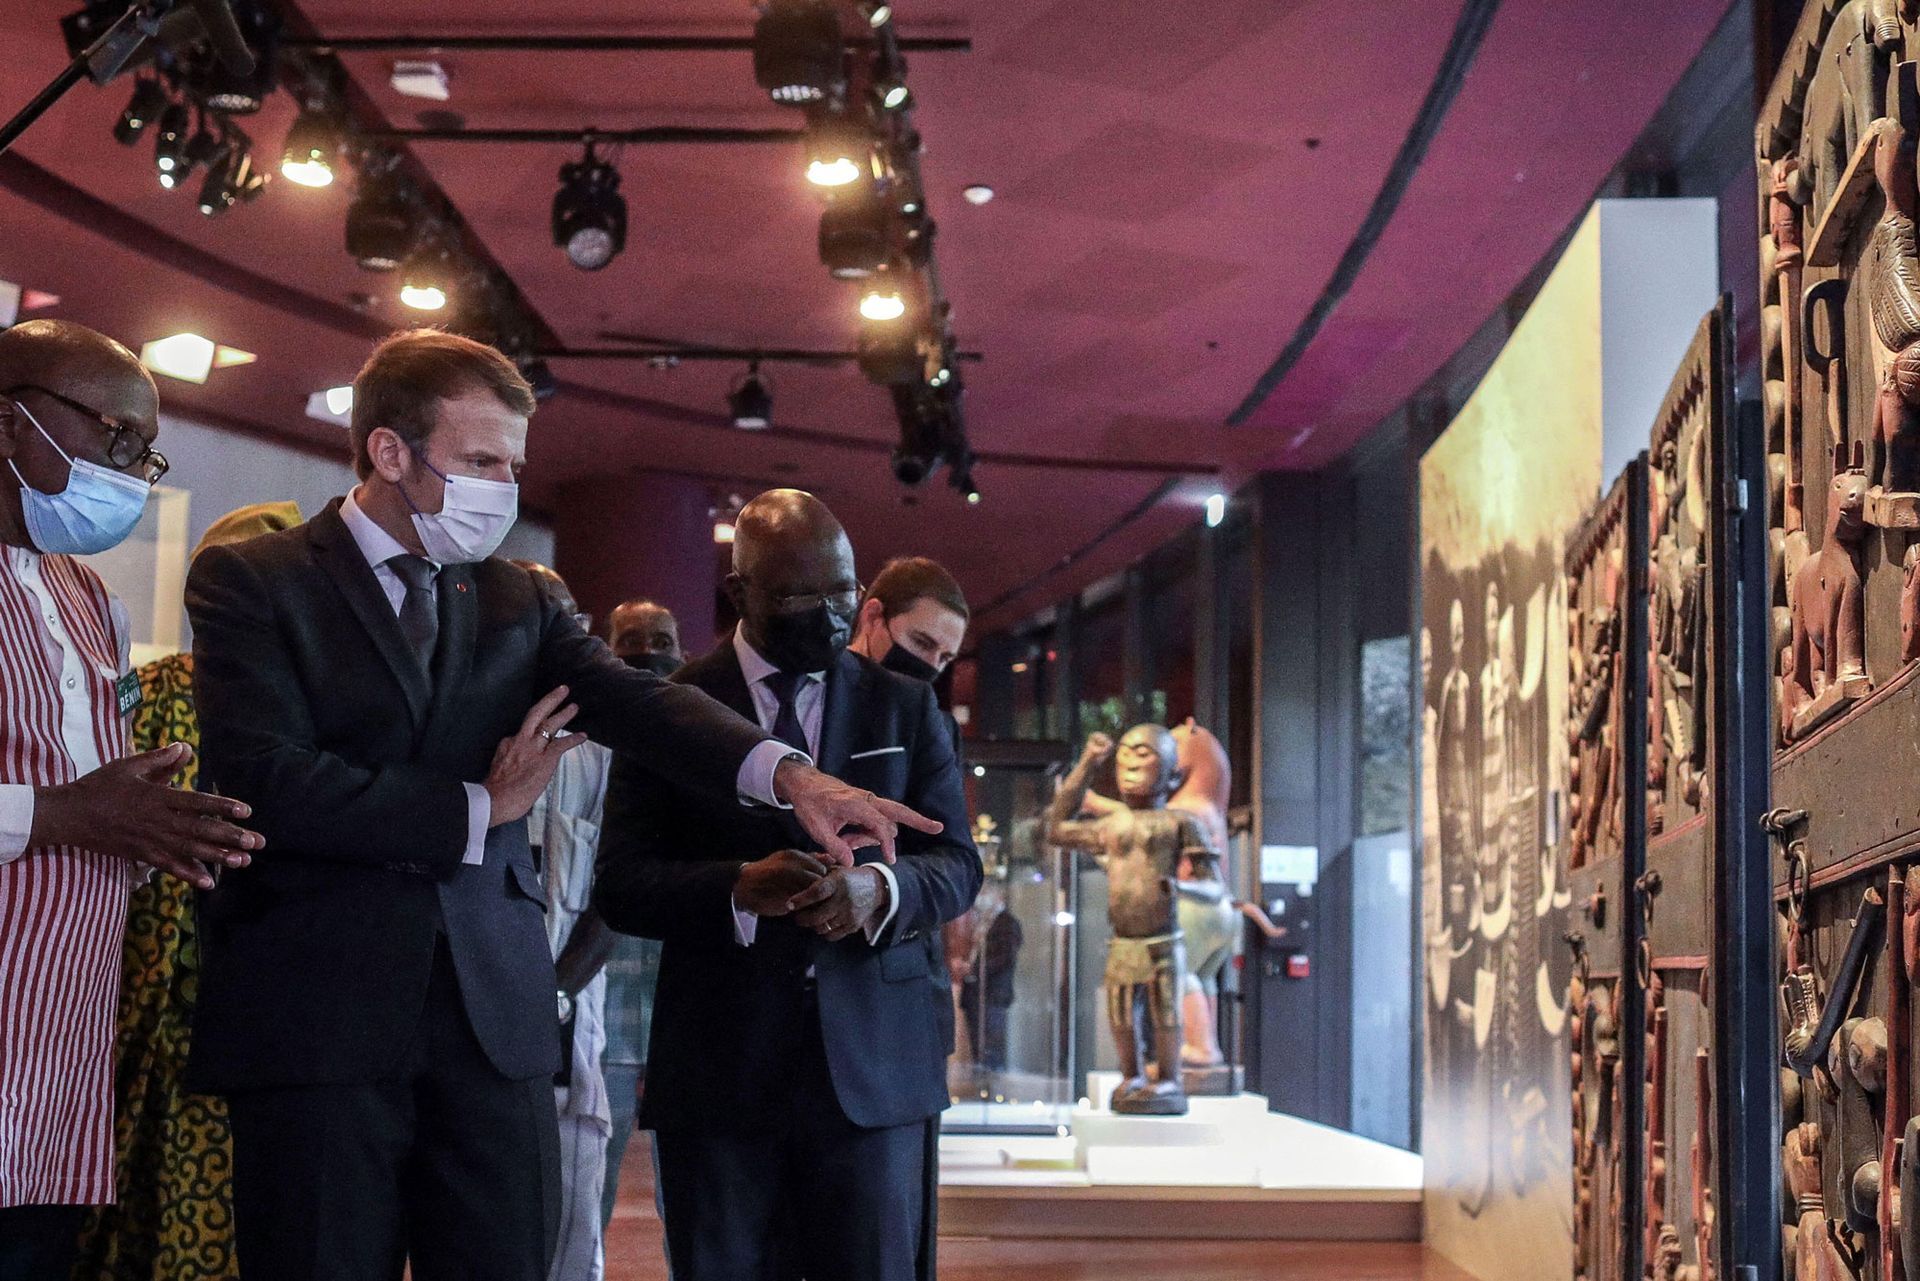 נשיא צרפת עמנואל מקרון במהלך הטקס שארגן מוזיאון Quai Branly-Jacques Chirac באוקטובר האחרון להחזרת 26 יצירות מאוצרות המלוכה של אבומי לרפובליקה של בנין

צילום: Abaca Press / Alamy